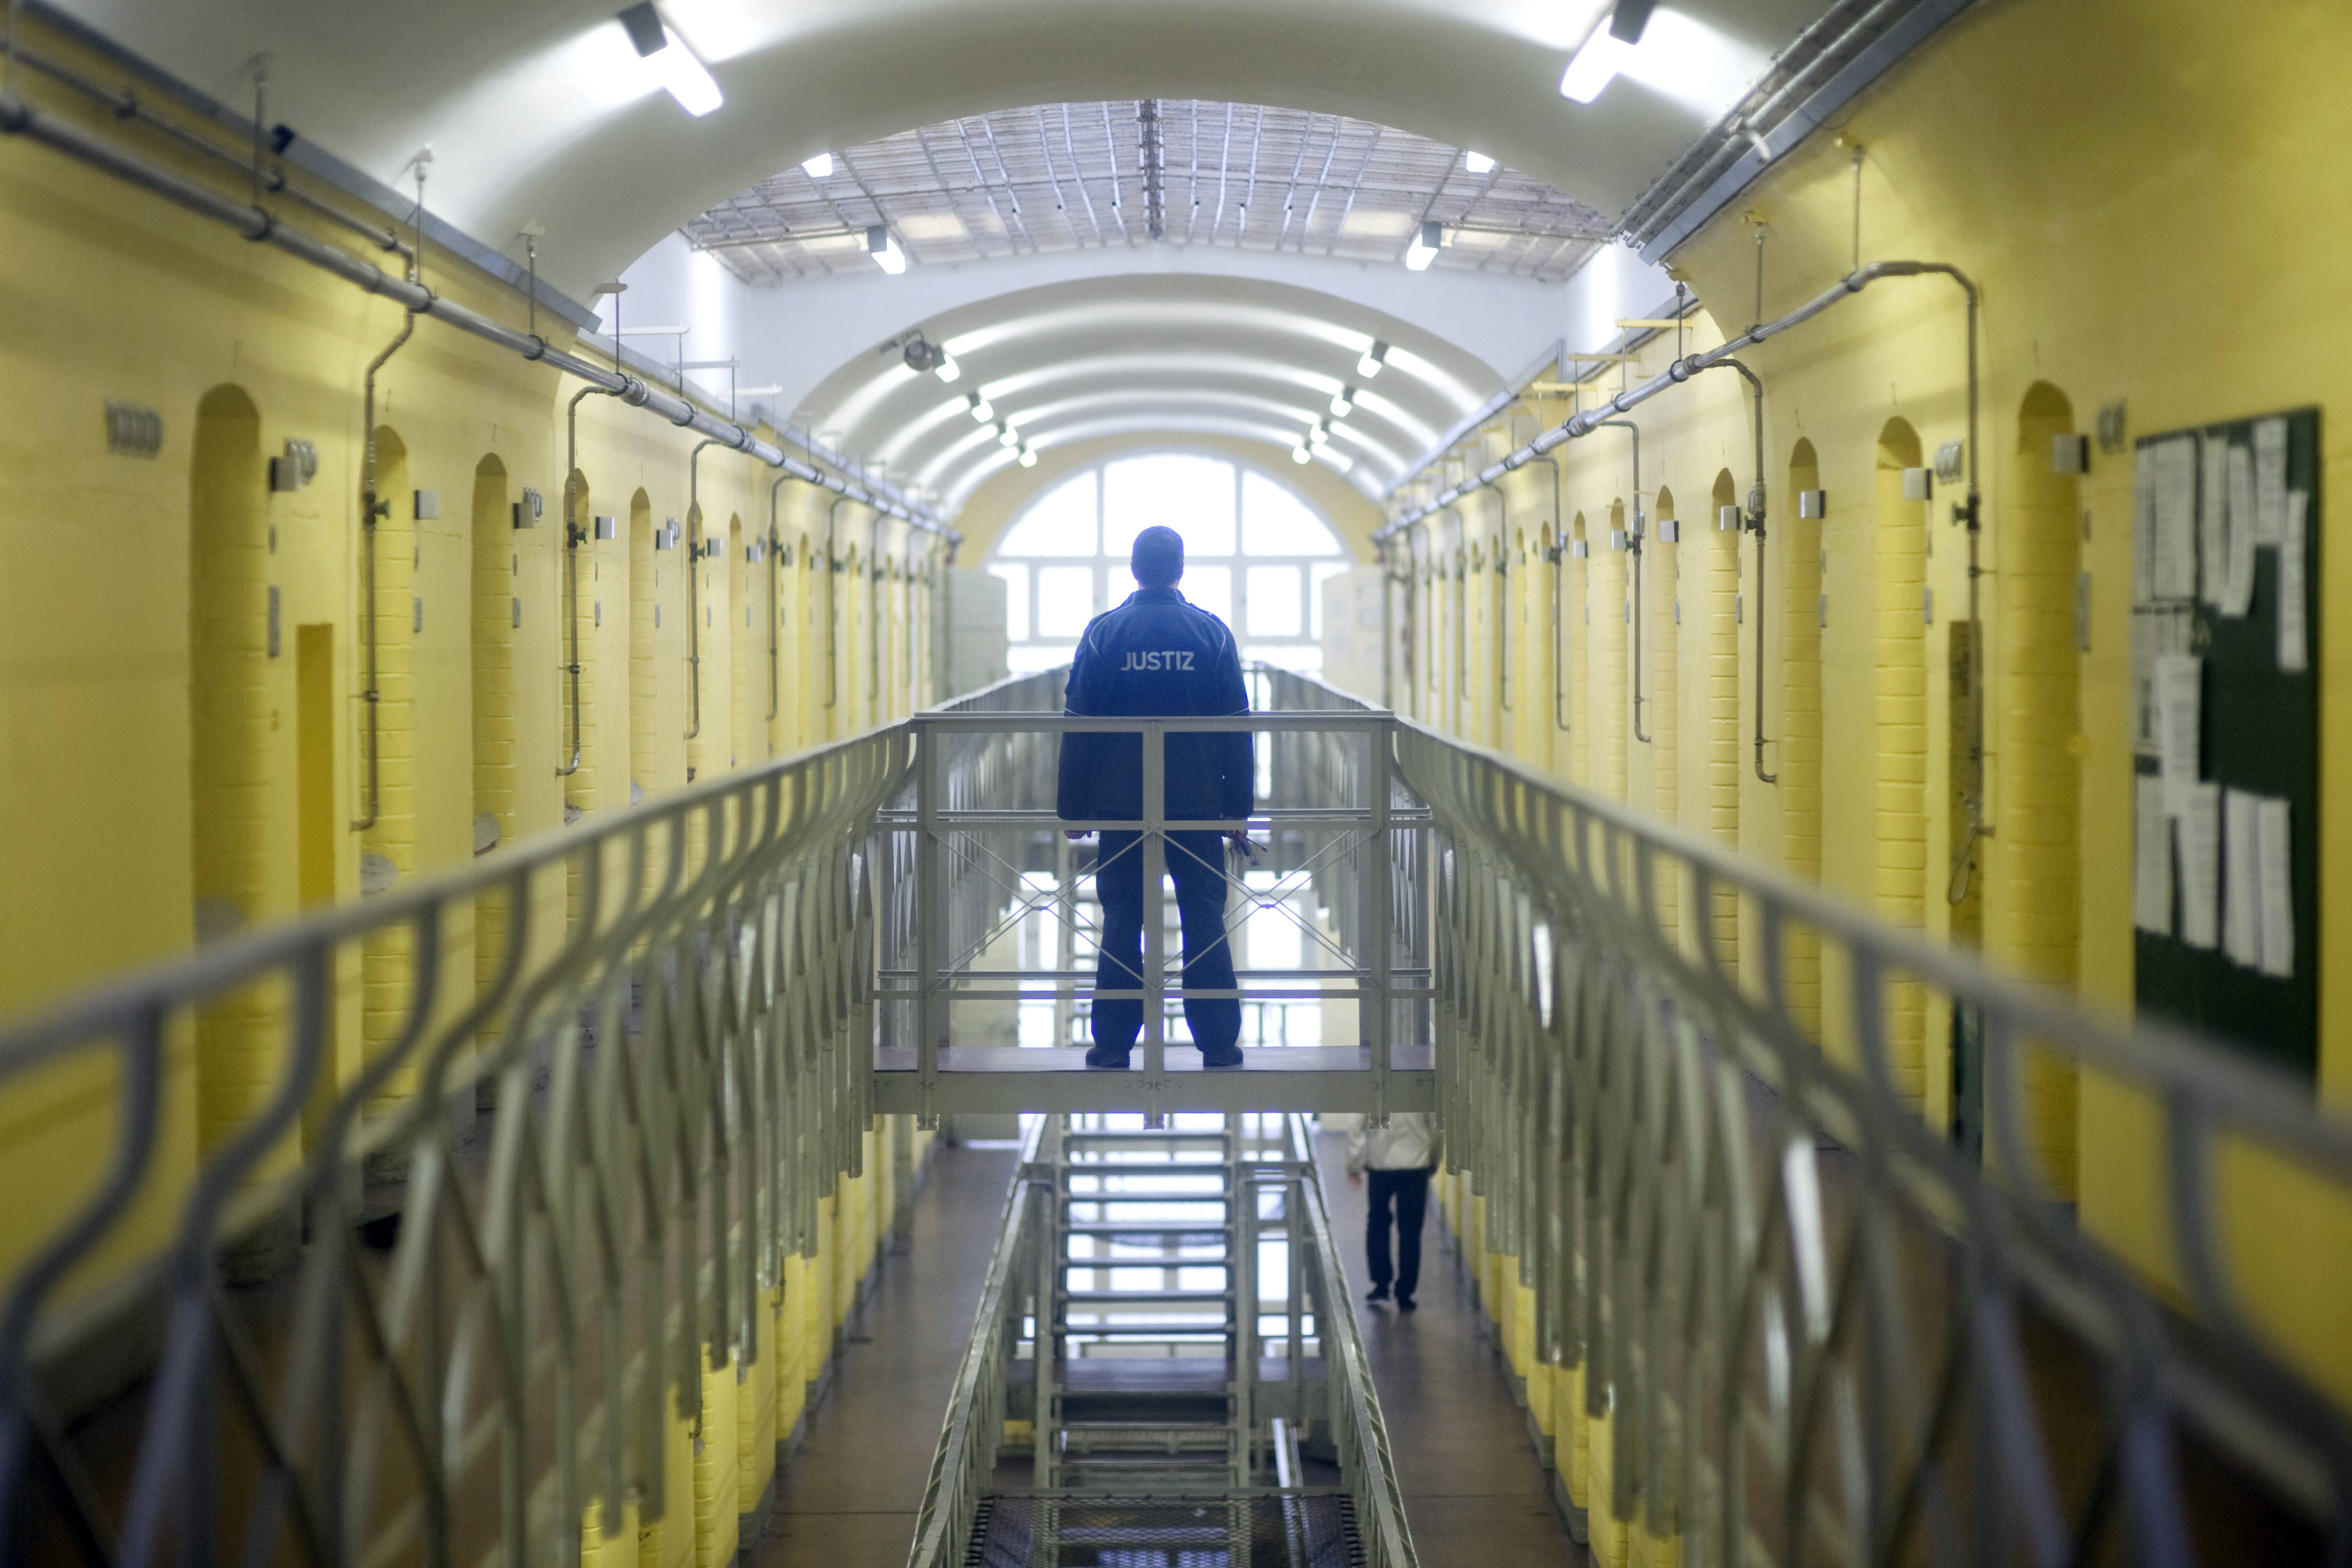 Strafvollzug - Laut Gewerkschaft fehlen mindestens 2.000 Beschäftigte in Gefängnissen